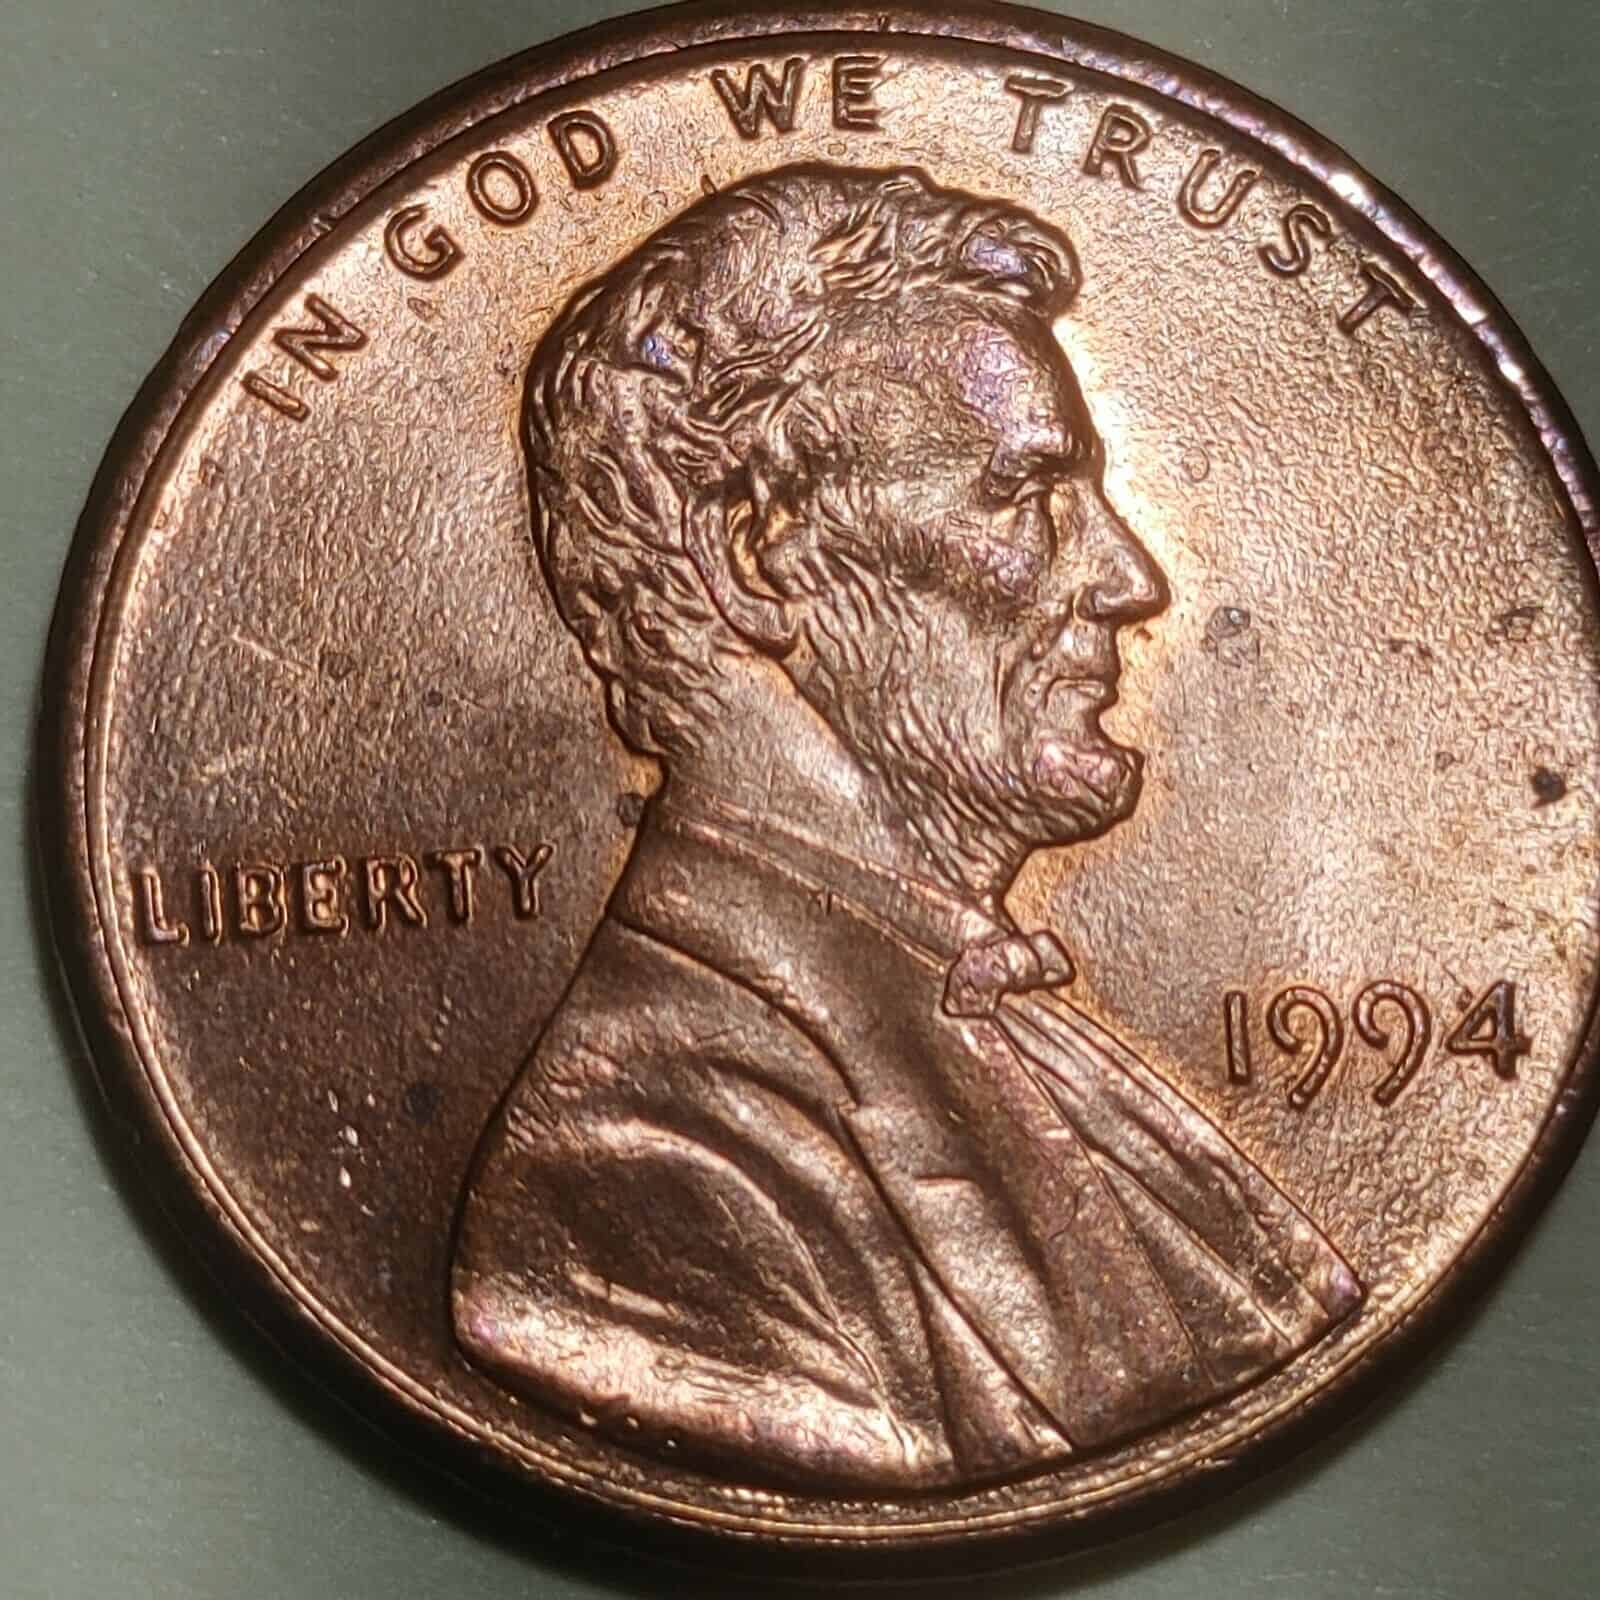 1994 No Mint Penny